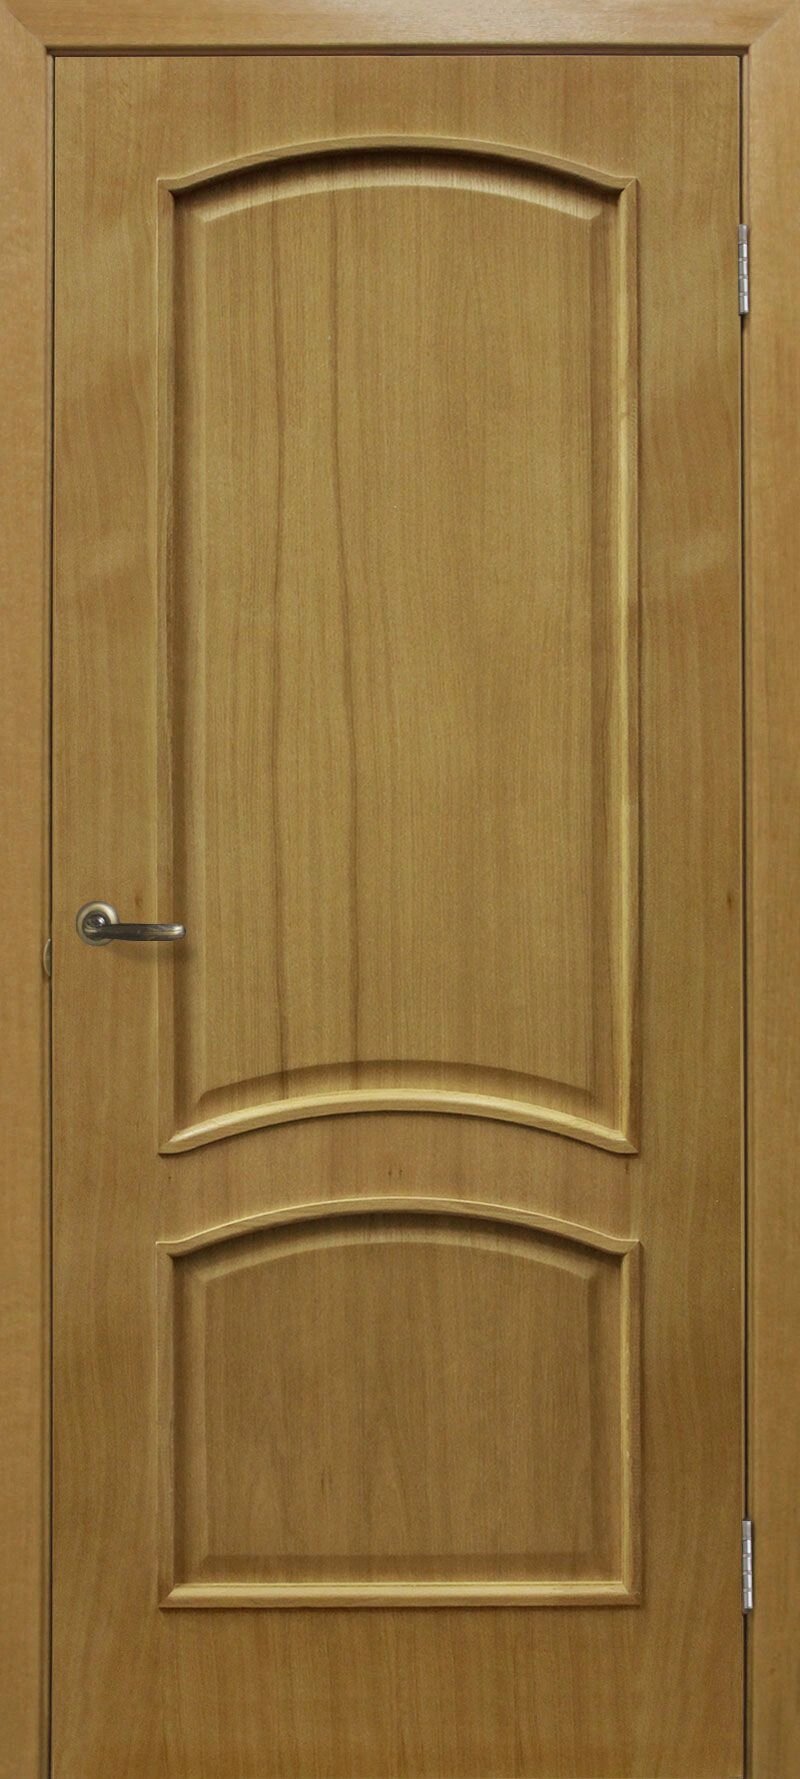 Двері міжкімнатні фабрики ОМІС Колекція Класика: модель Капрі від компанії Компанія «Верго» Мелодія вашого будинку! - фото 1